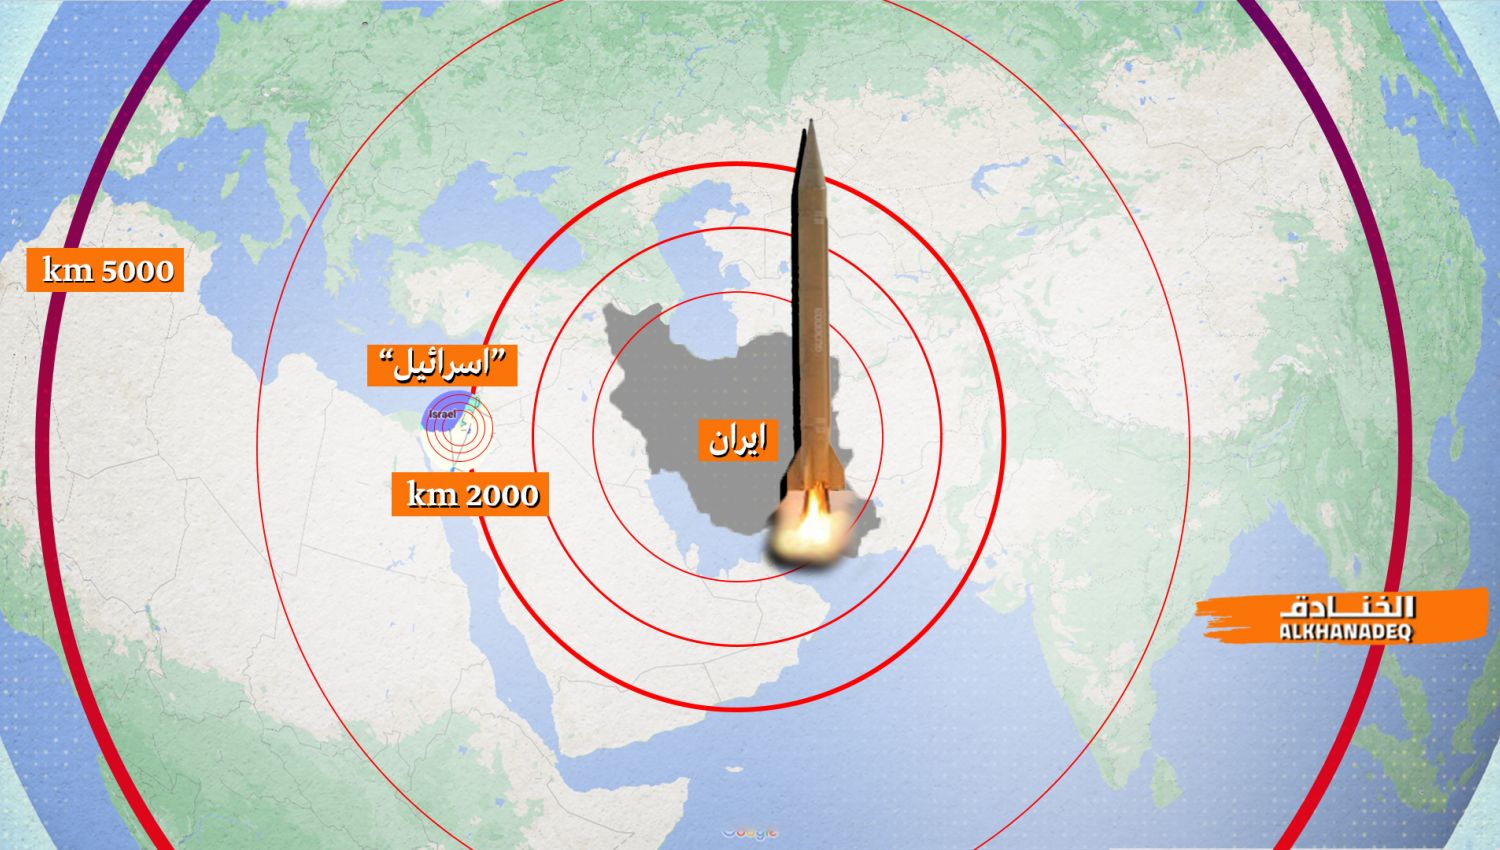 إيران قادرة على صنع صواريخ عابرة للقارات بمدى 5000 كلم ولكن!